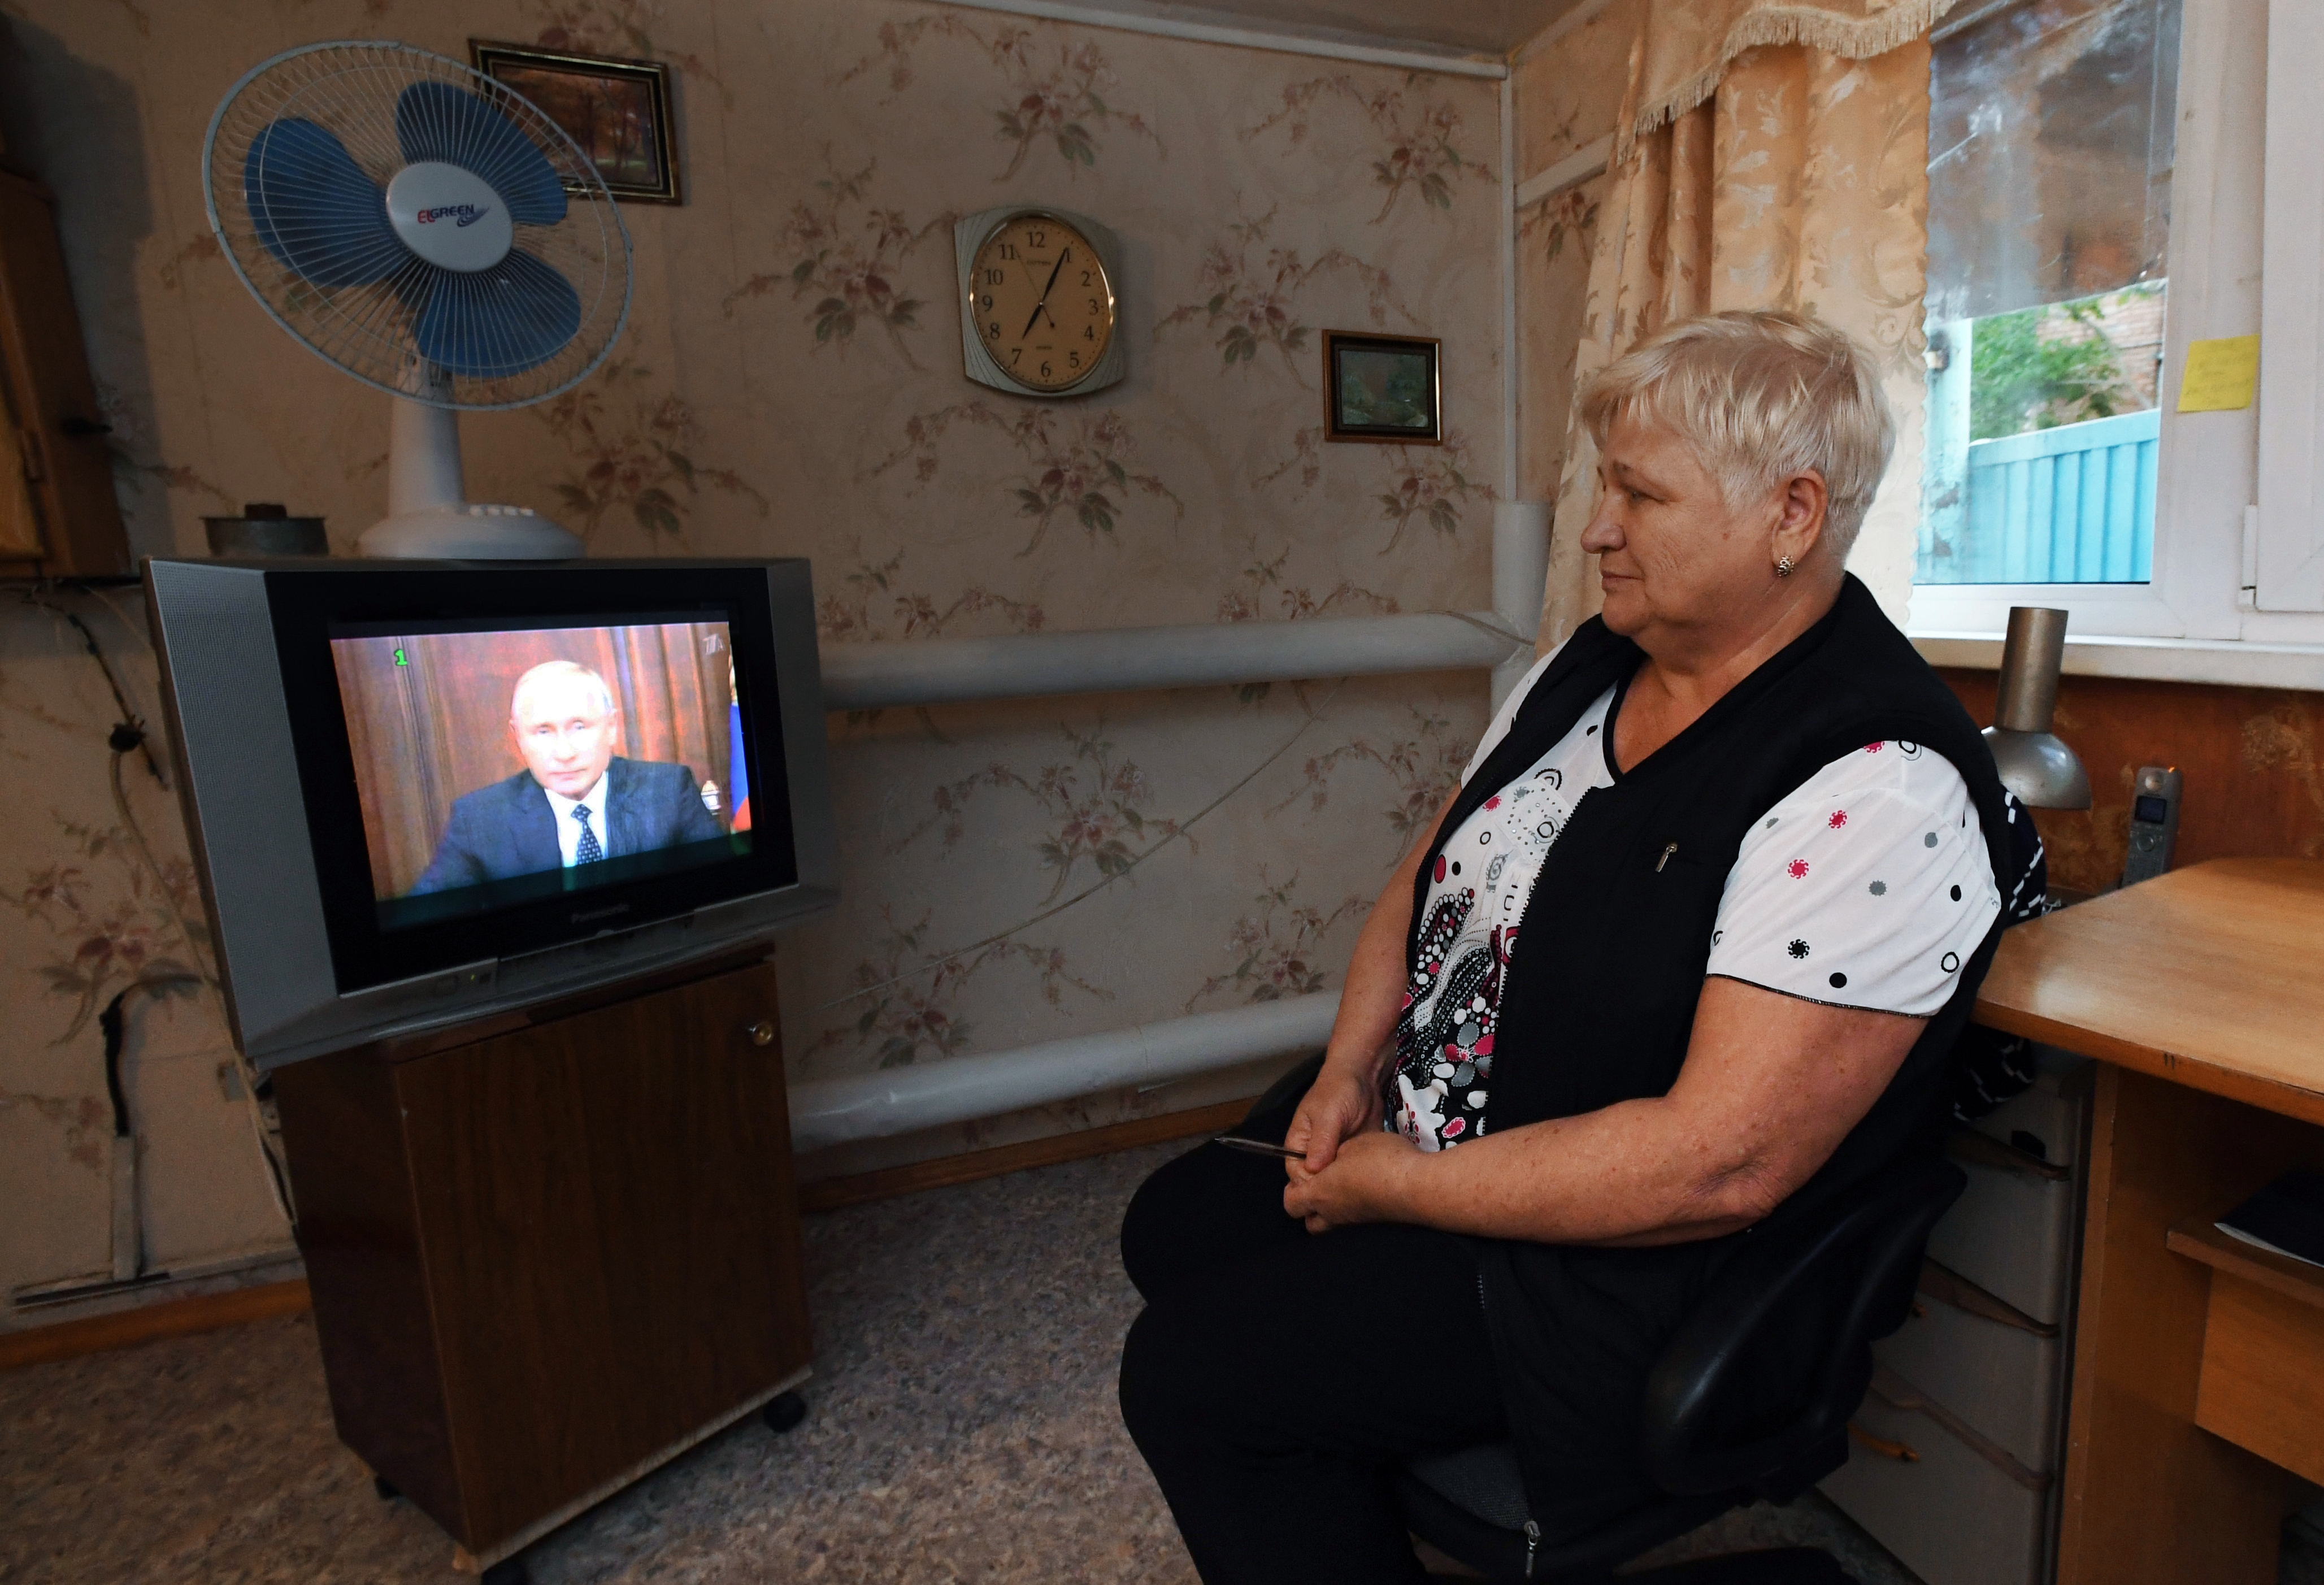 Новости про пенсии пенсионеров. Кабельное Телевидение для пенсионеров. Пенсионеры смотрят телевизор. Пенсионер у телевизора.